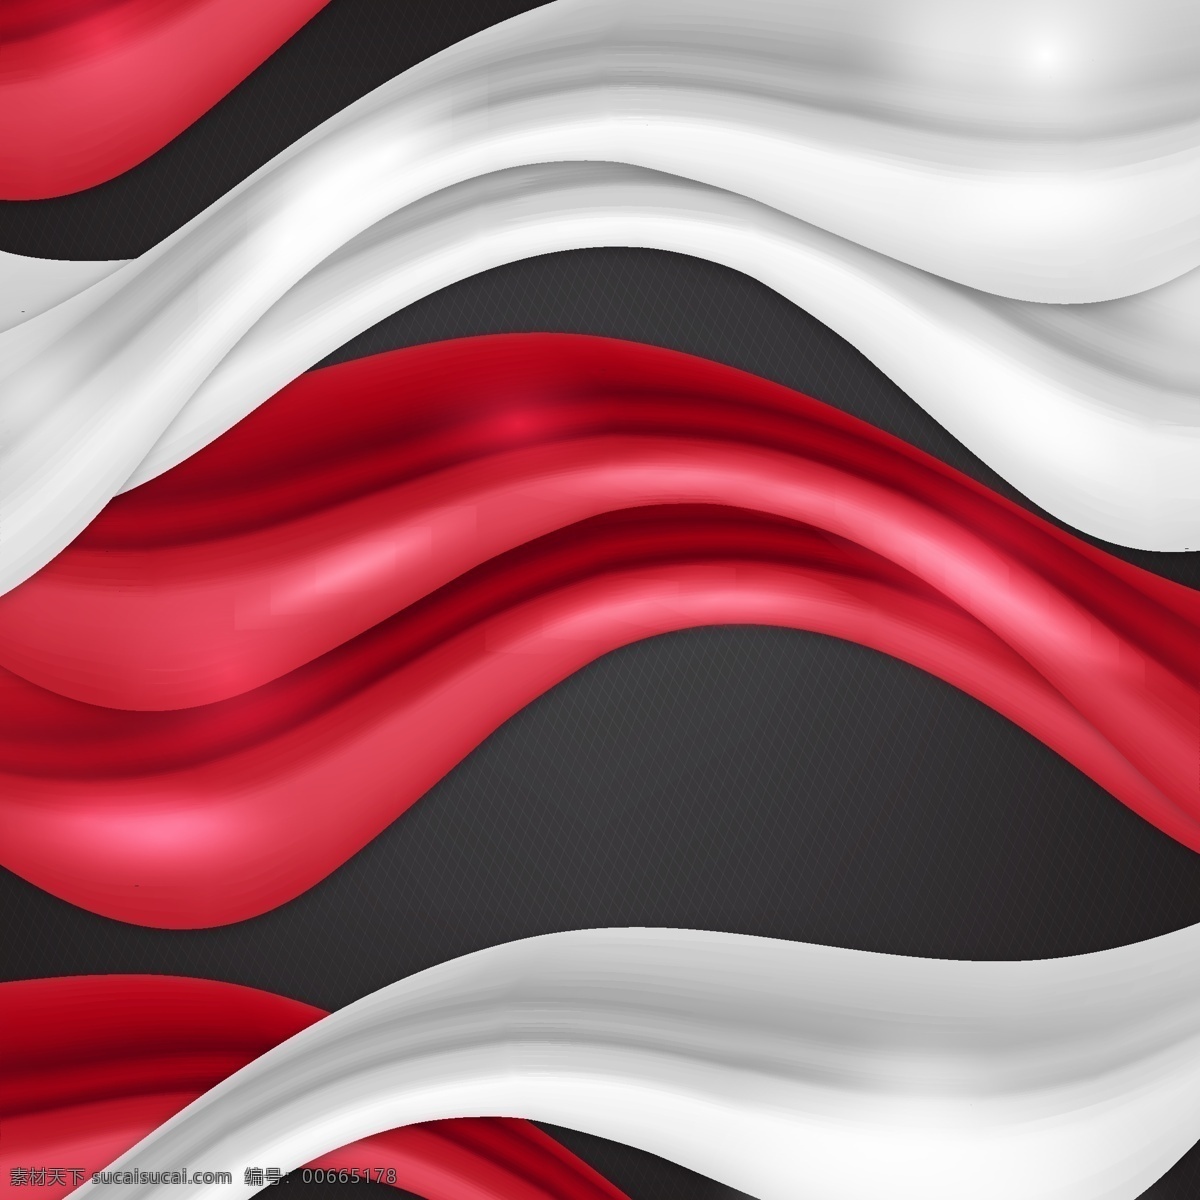 黑白 红 抽象 纹理 图案 曲线背景素材 ai素材 彩色背景素材 背景 图 礼品 包装纸 科技 抽象纹路 炫丽 不规则 科技感